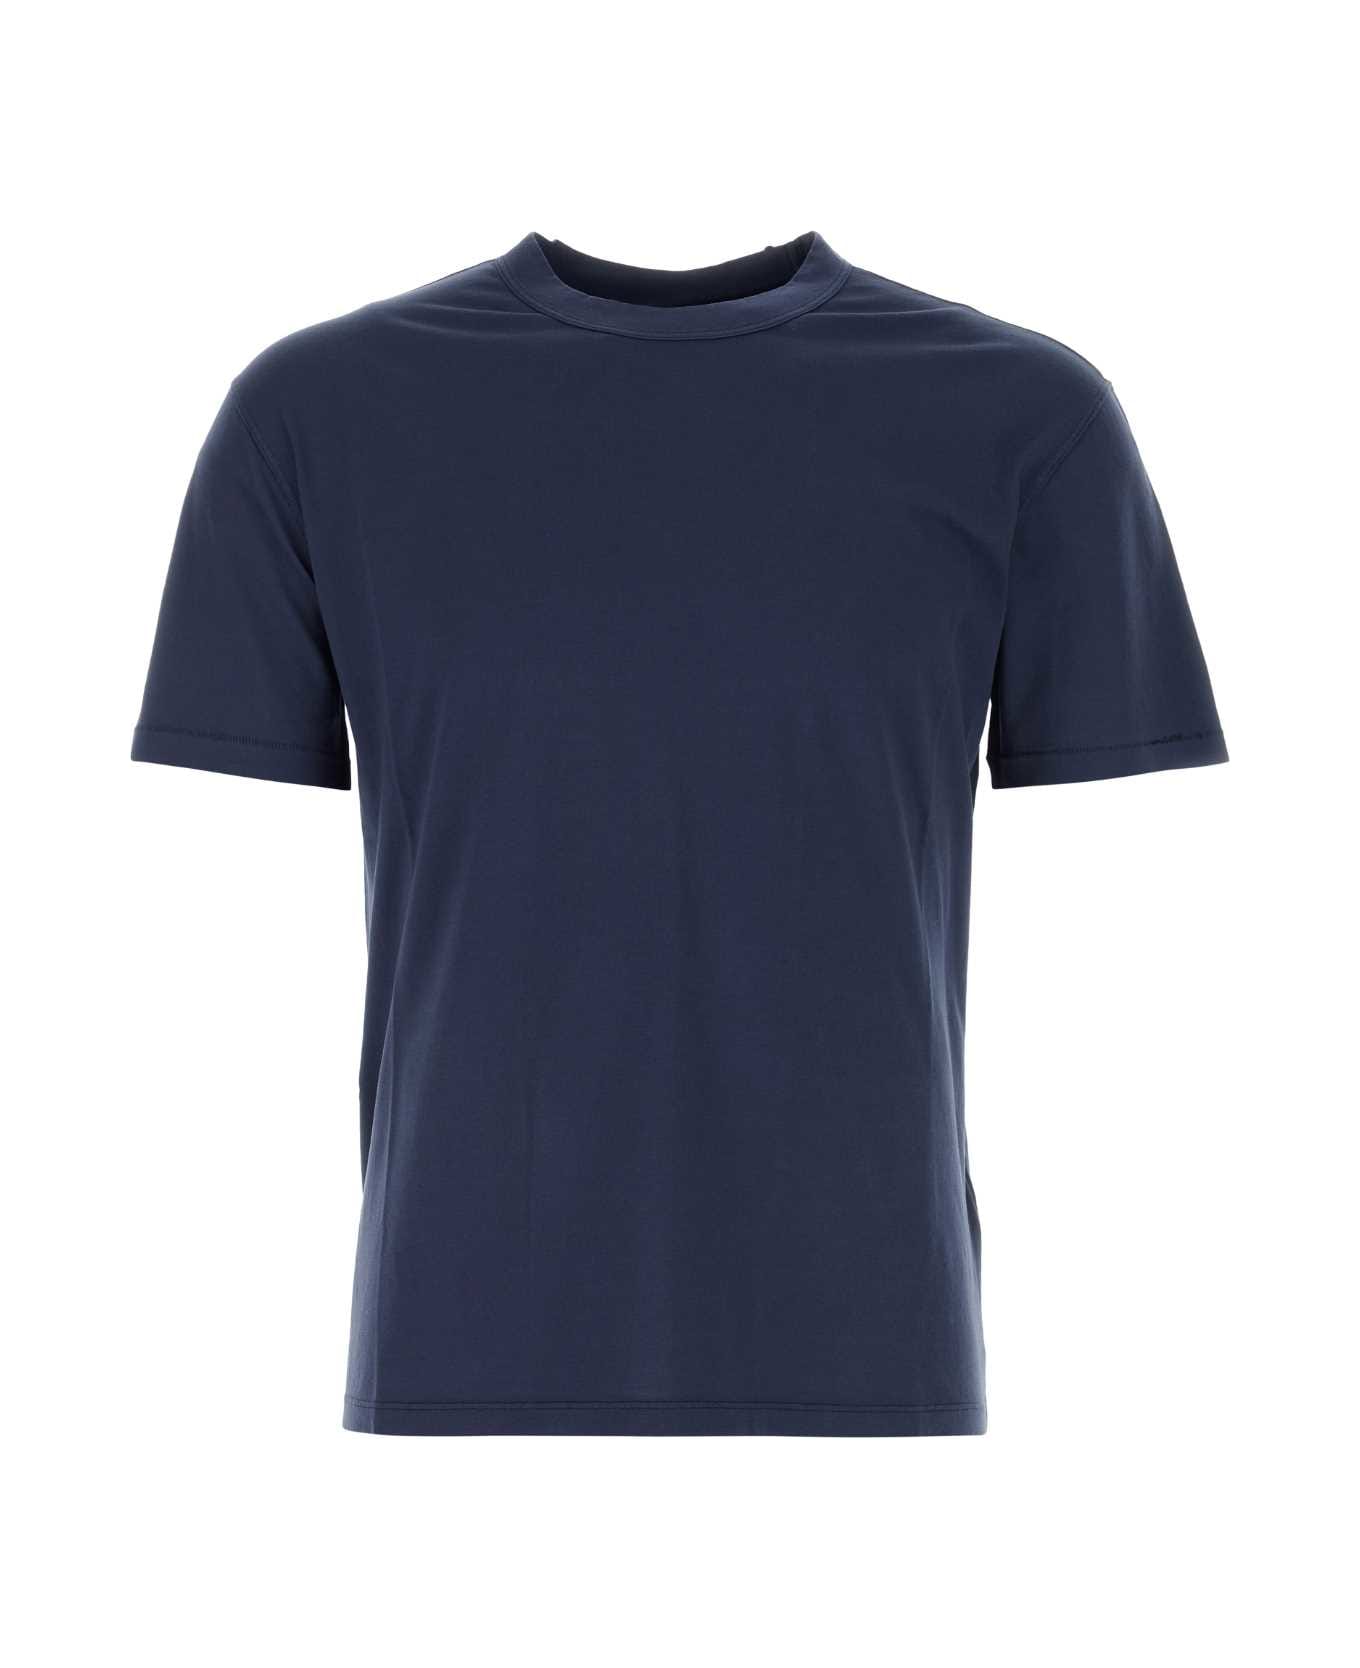 Ten C Navy Blue Cotton T-shirt - BLUNOTTE